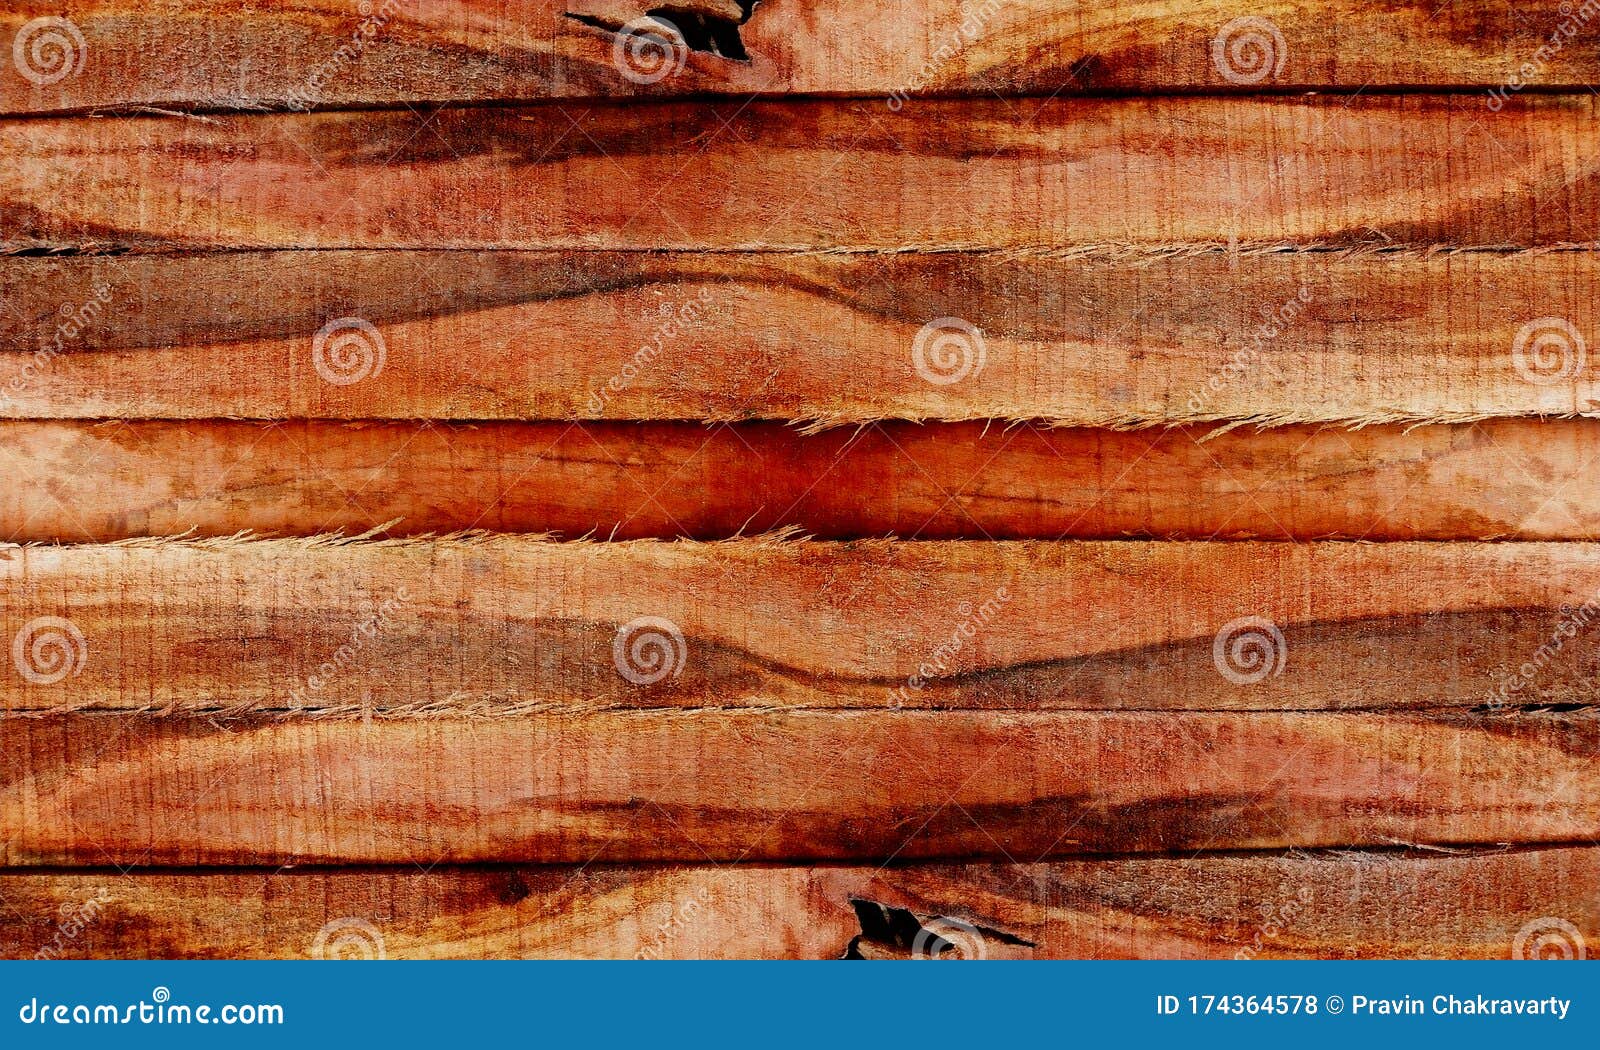 Nền gỗ thô (rustic wood background): Một nền gỗ thô với vẻ đẹp tự nhiên và rừng rậm sẽ là một lựa chọn hoàn hảo cho những ai yêu thích thiên nhiên và công nghệ. Hãy nhìn qua để tận hưởng vẻ đẹp hoang sơ và thiên nhiên của hình ảnh này.